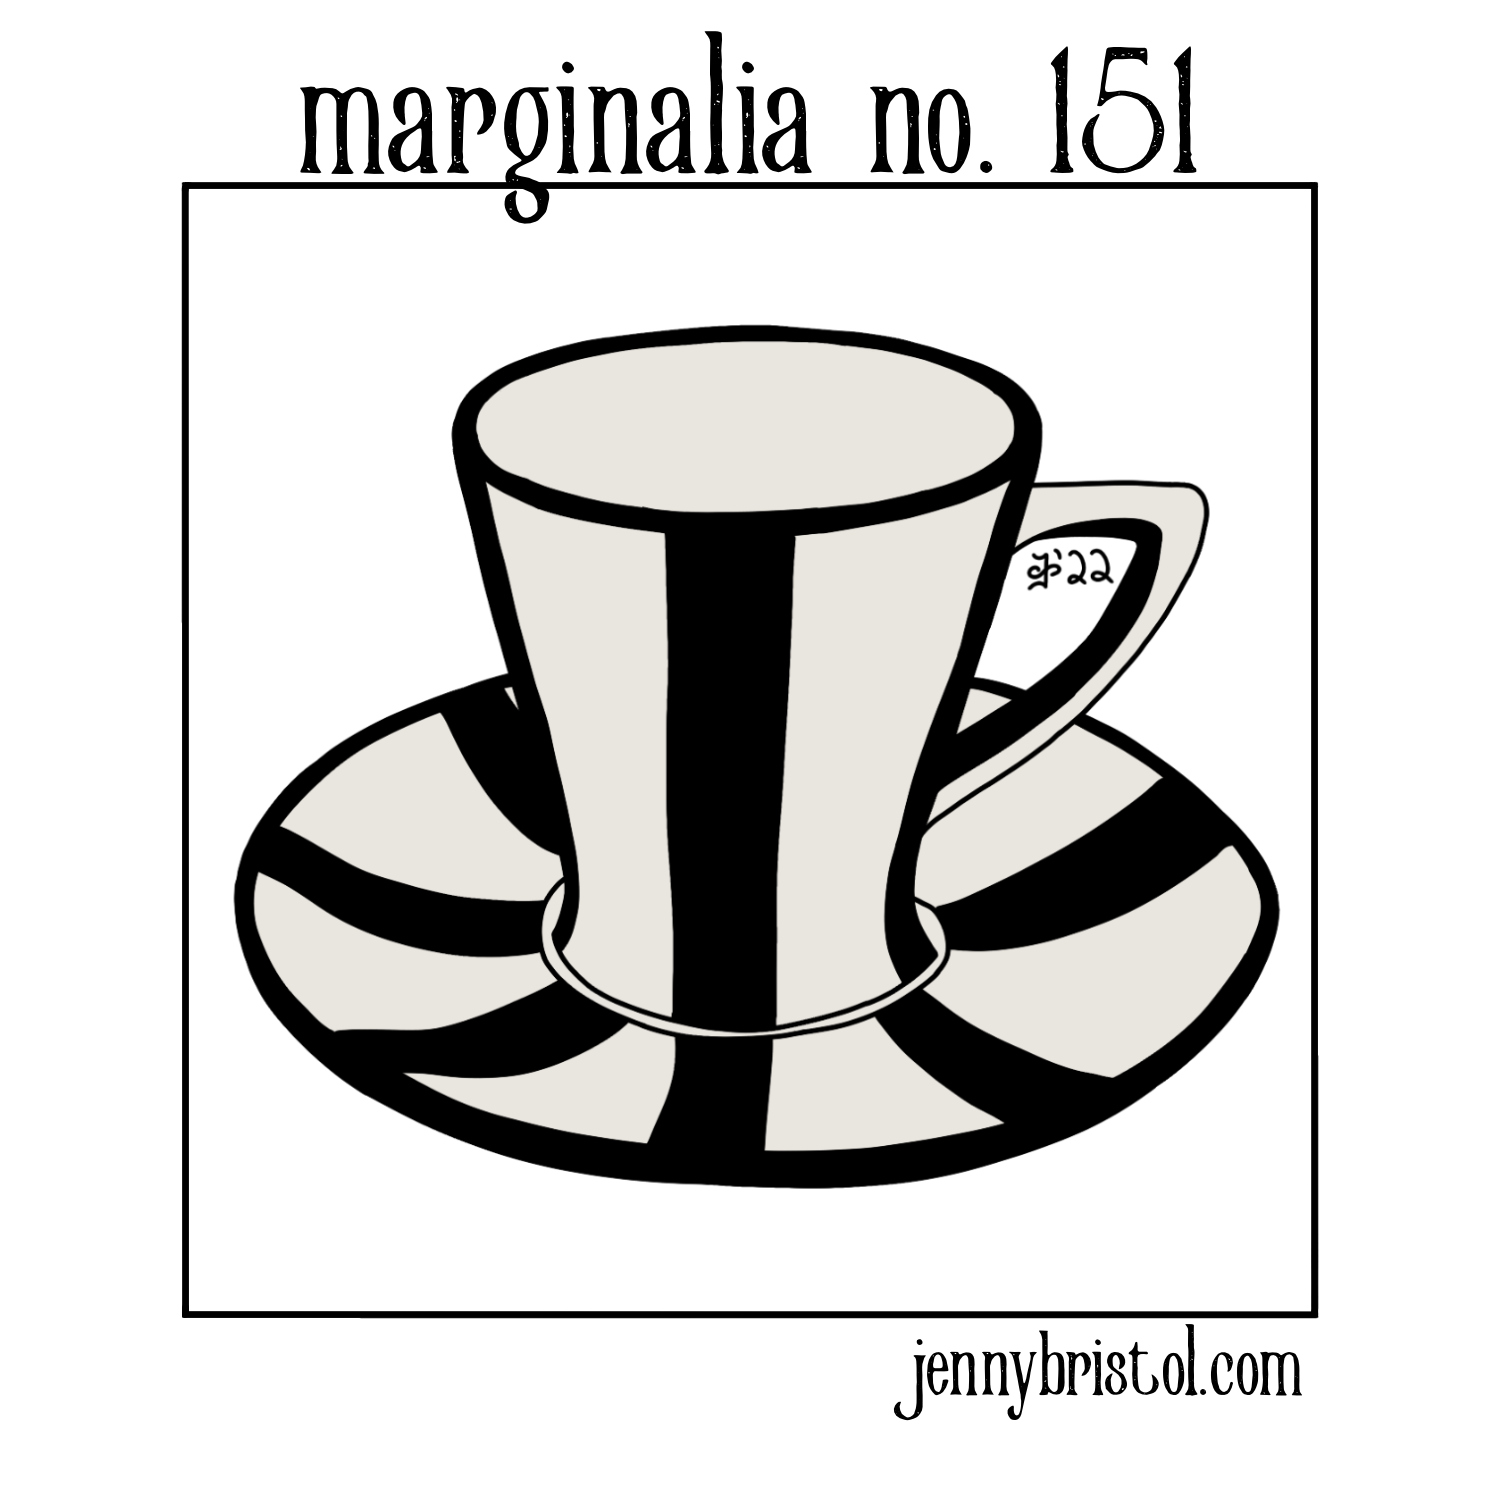 Marginalia_No._151